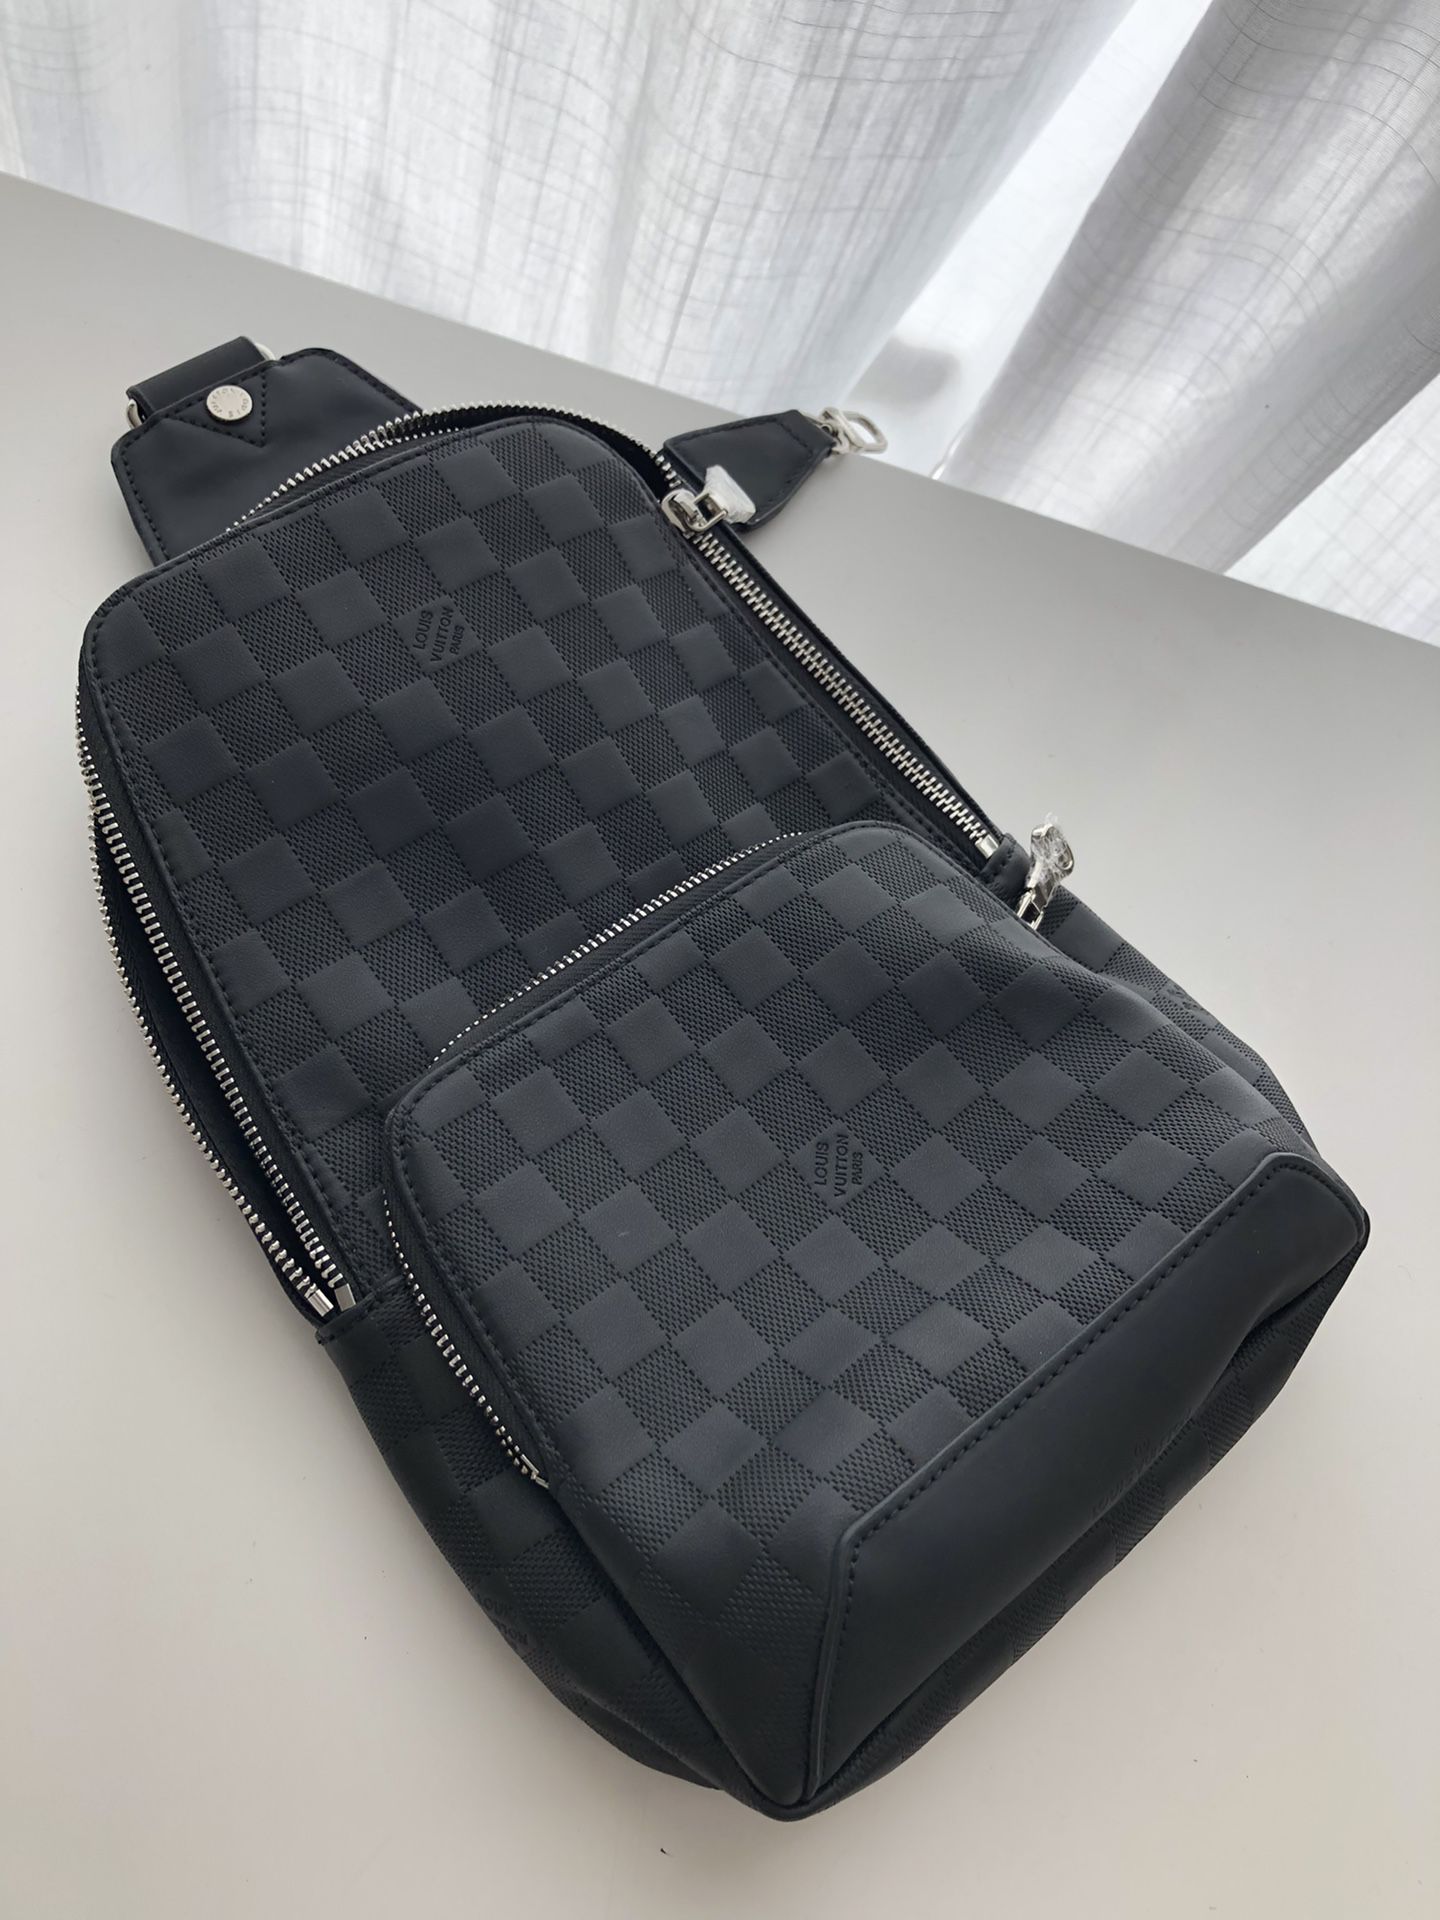 Men’s Bag Backpack purse 